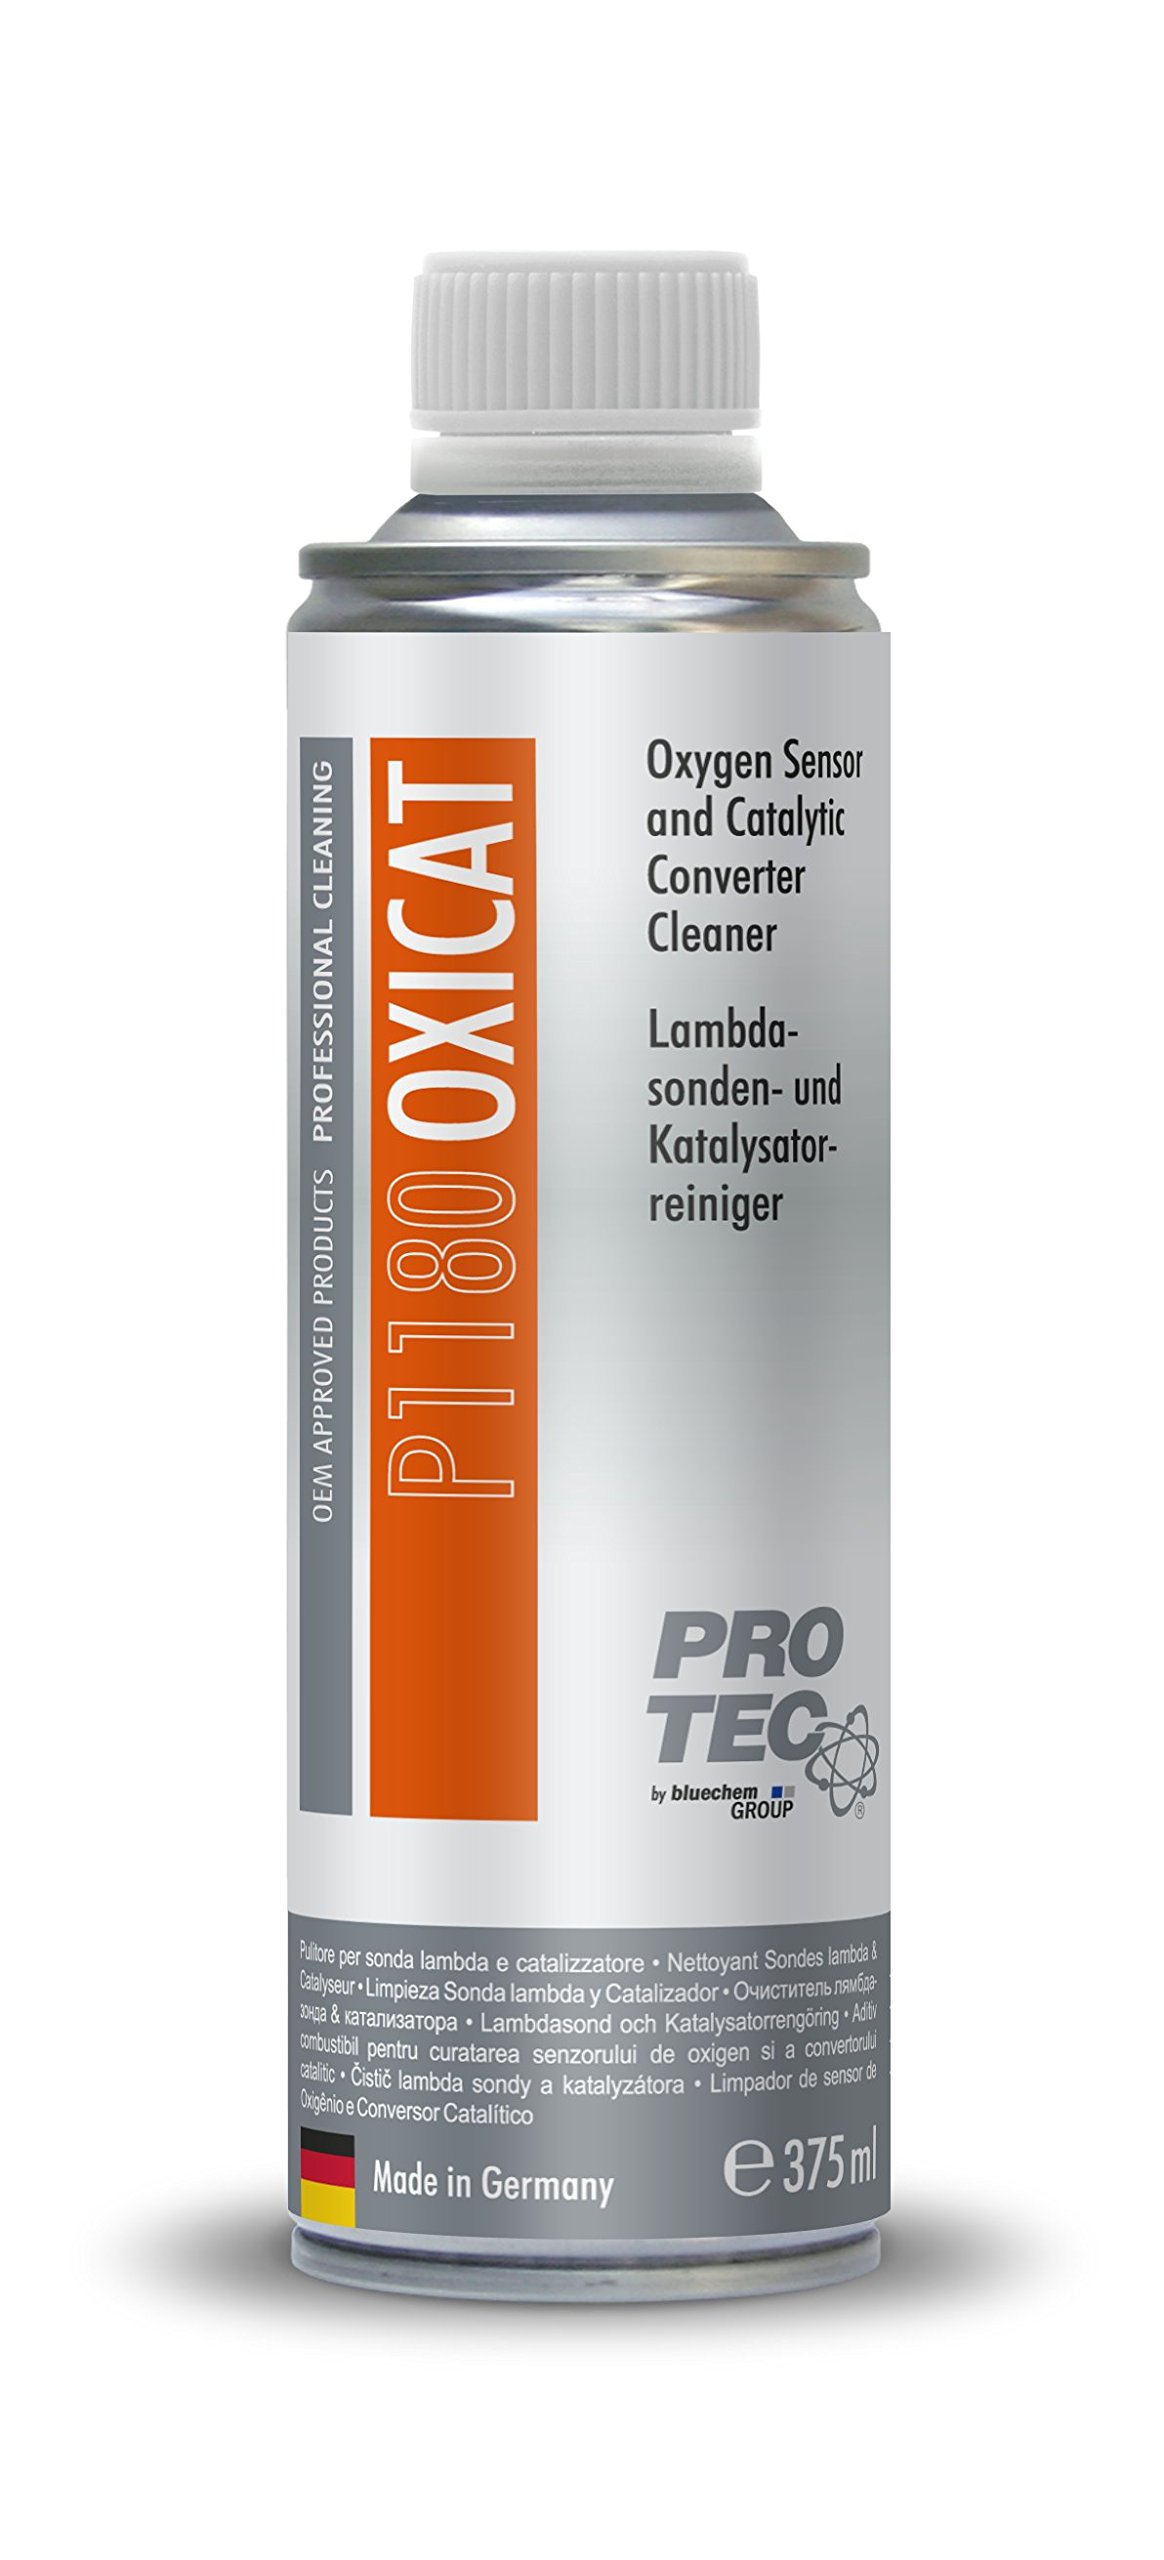 Pro Tec OXICAT – Oxygen Sensor & CATALYTIC Converter Cleaner Reiniger für Lambdasonde und Katalysator 375 ml. von Protec